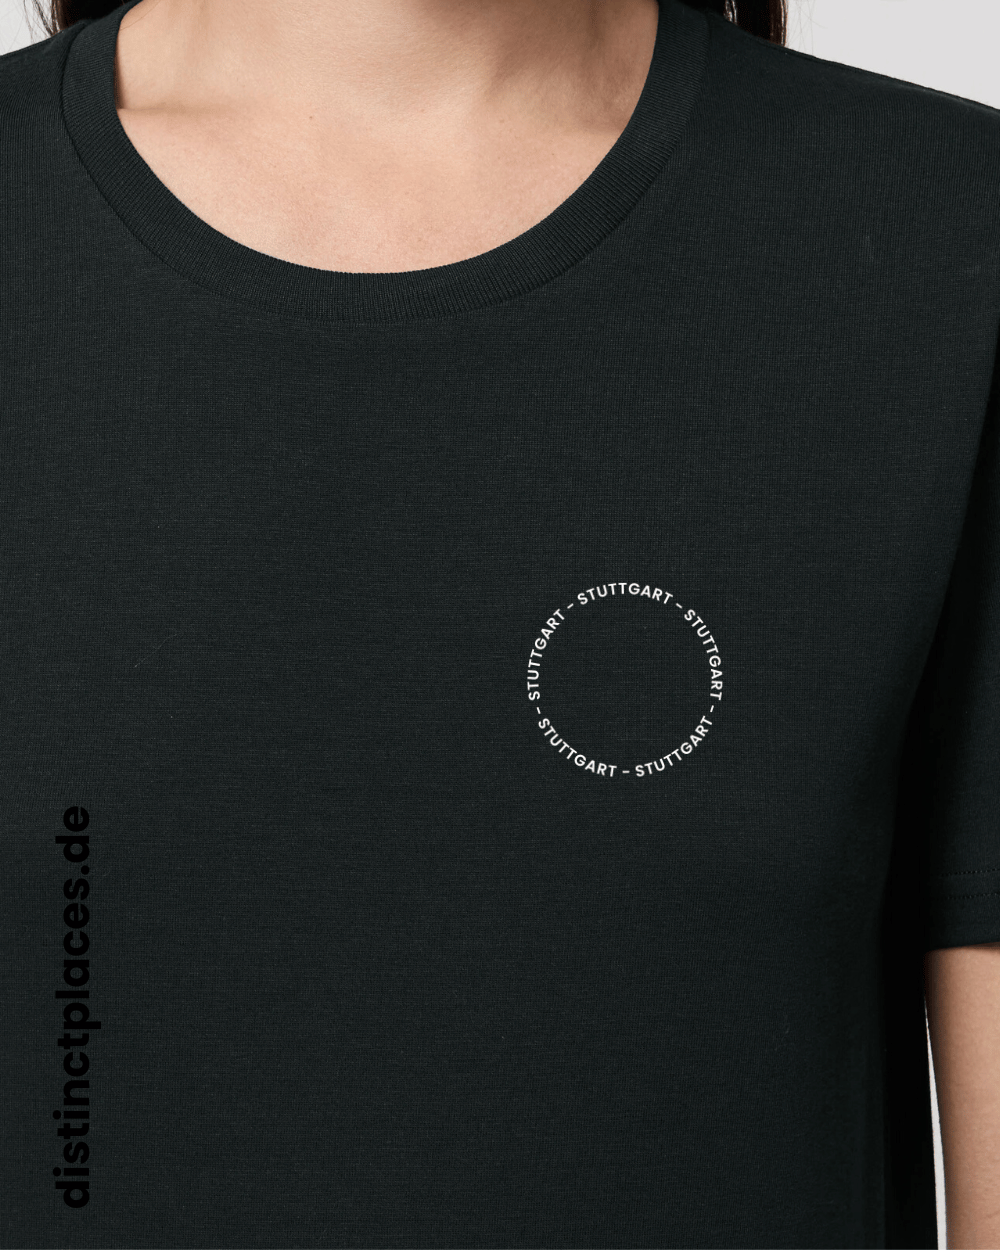 Detailansicht schwarzes fairtrade, vegan und bio-baumwoll T-Shirt von vorne mit einem minimalistischem weißen Logo, beziehungsweise Schriftzug für Stuttgart